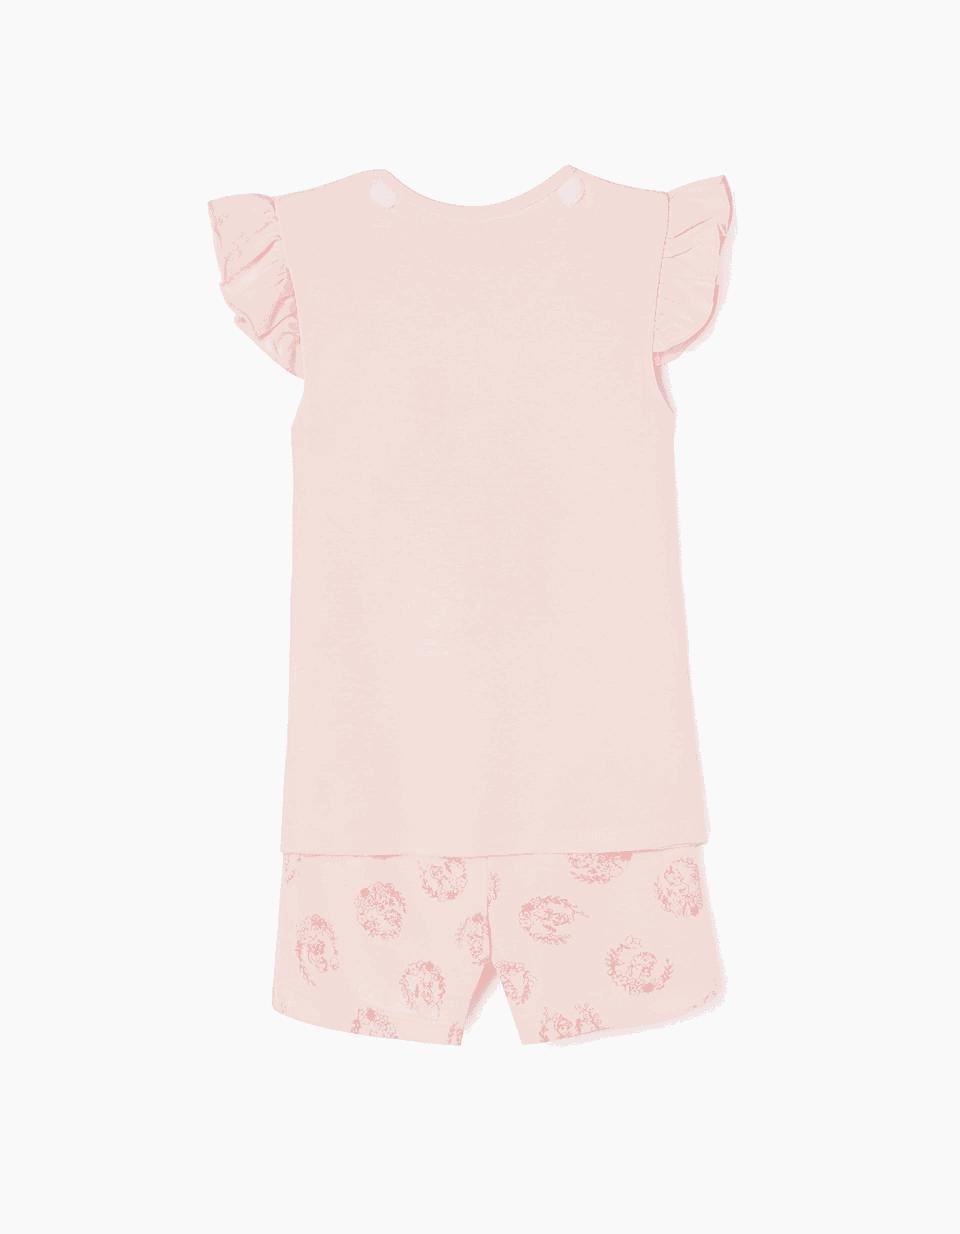 Zippy - Pink Short Removable Cape Pyjamas, Kids Girls